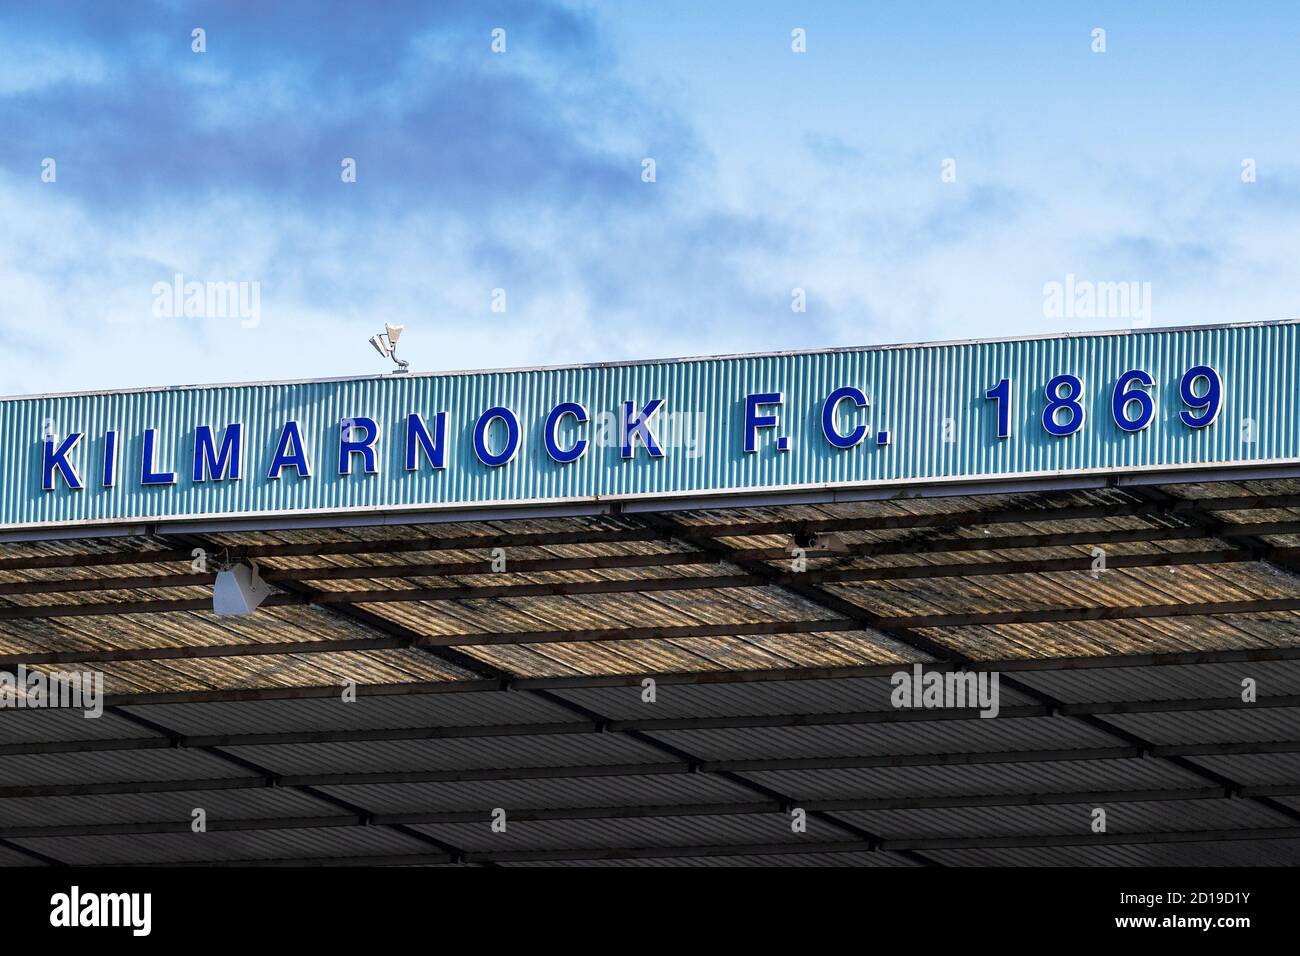 Kilmarnock Football Club nombre sobre uno de los stands del estadio, Rugby Park, Kilmarnock, Ayrshire, Escocia, Reino Unido Foto de stock